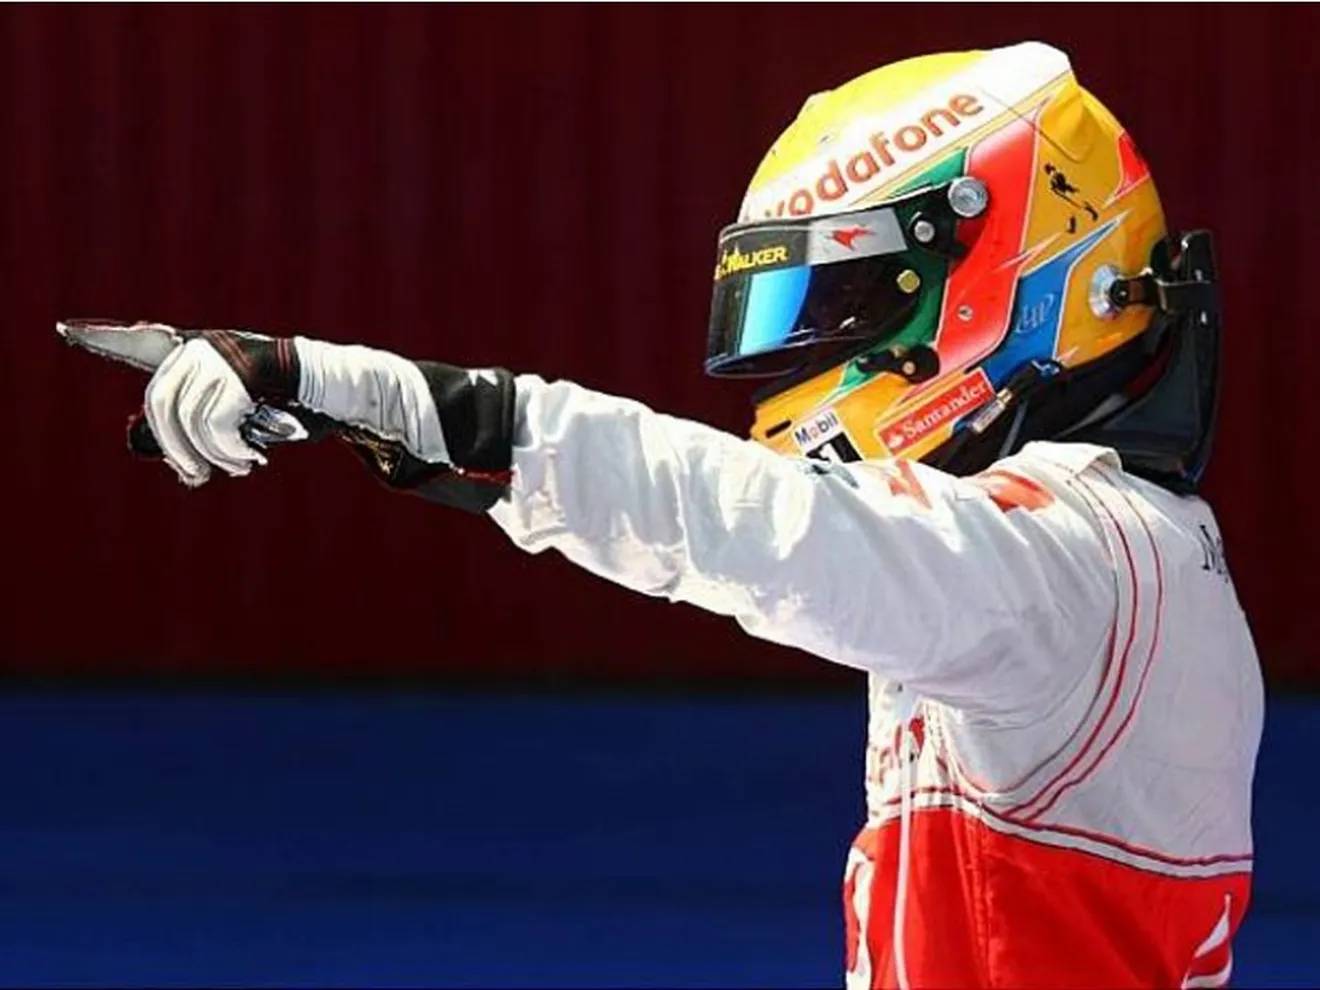 GP Alemania: victoria de Hamilton, Alonso segundo. El líder hoy no puede